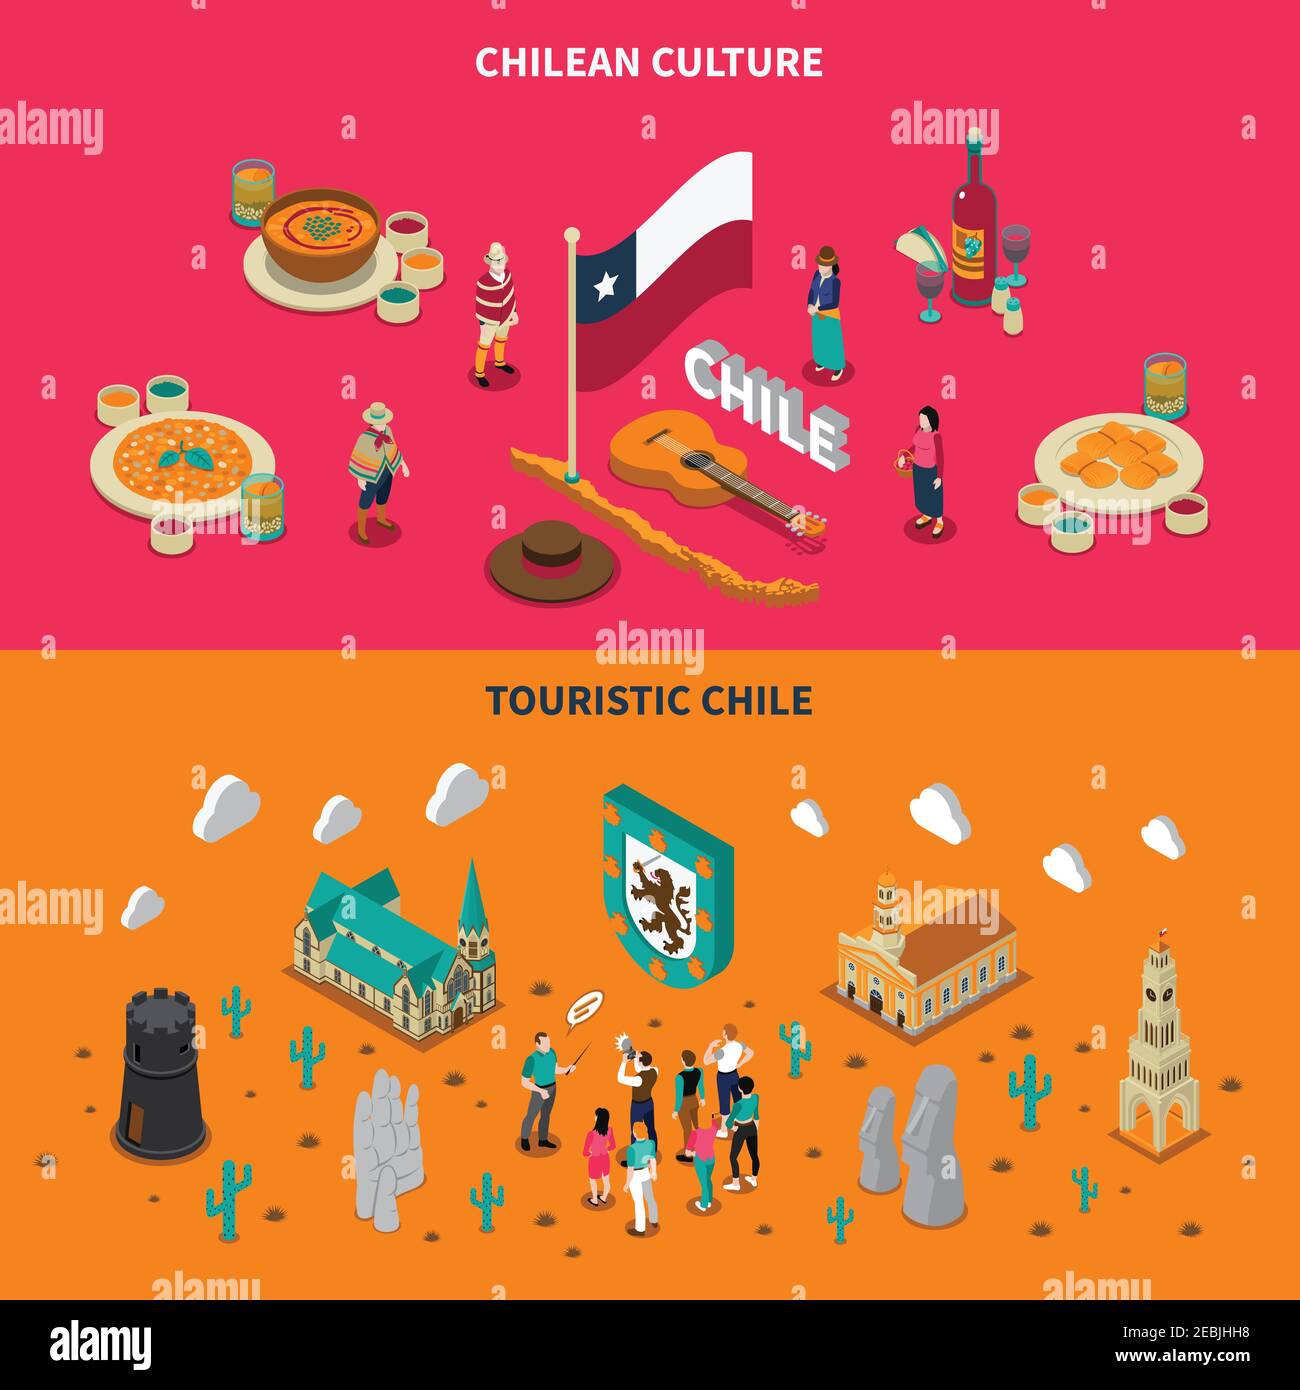 Chili top attractions touristiques 2 bannières isométriques horizontales avec national illustrations vectorielles isolées de boîtes et de lieux d'intérêt Illustration de Vecteur